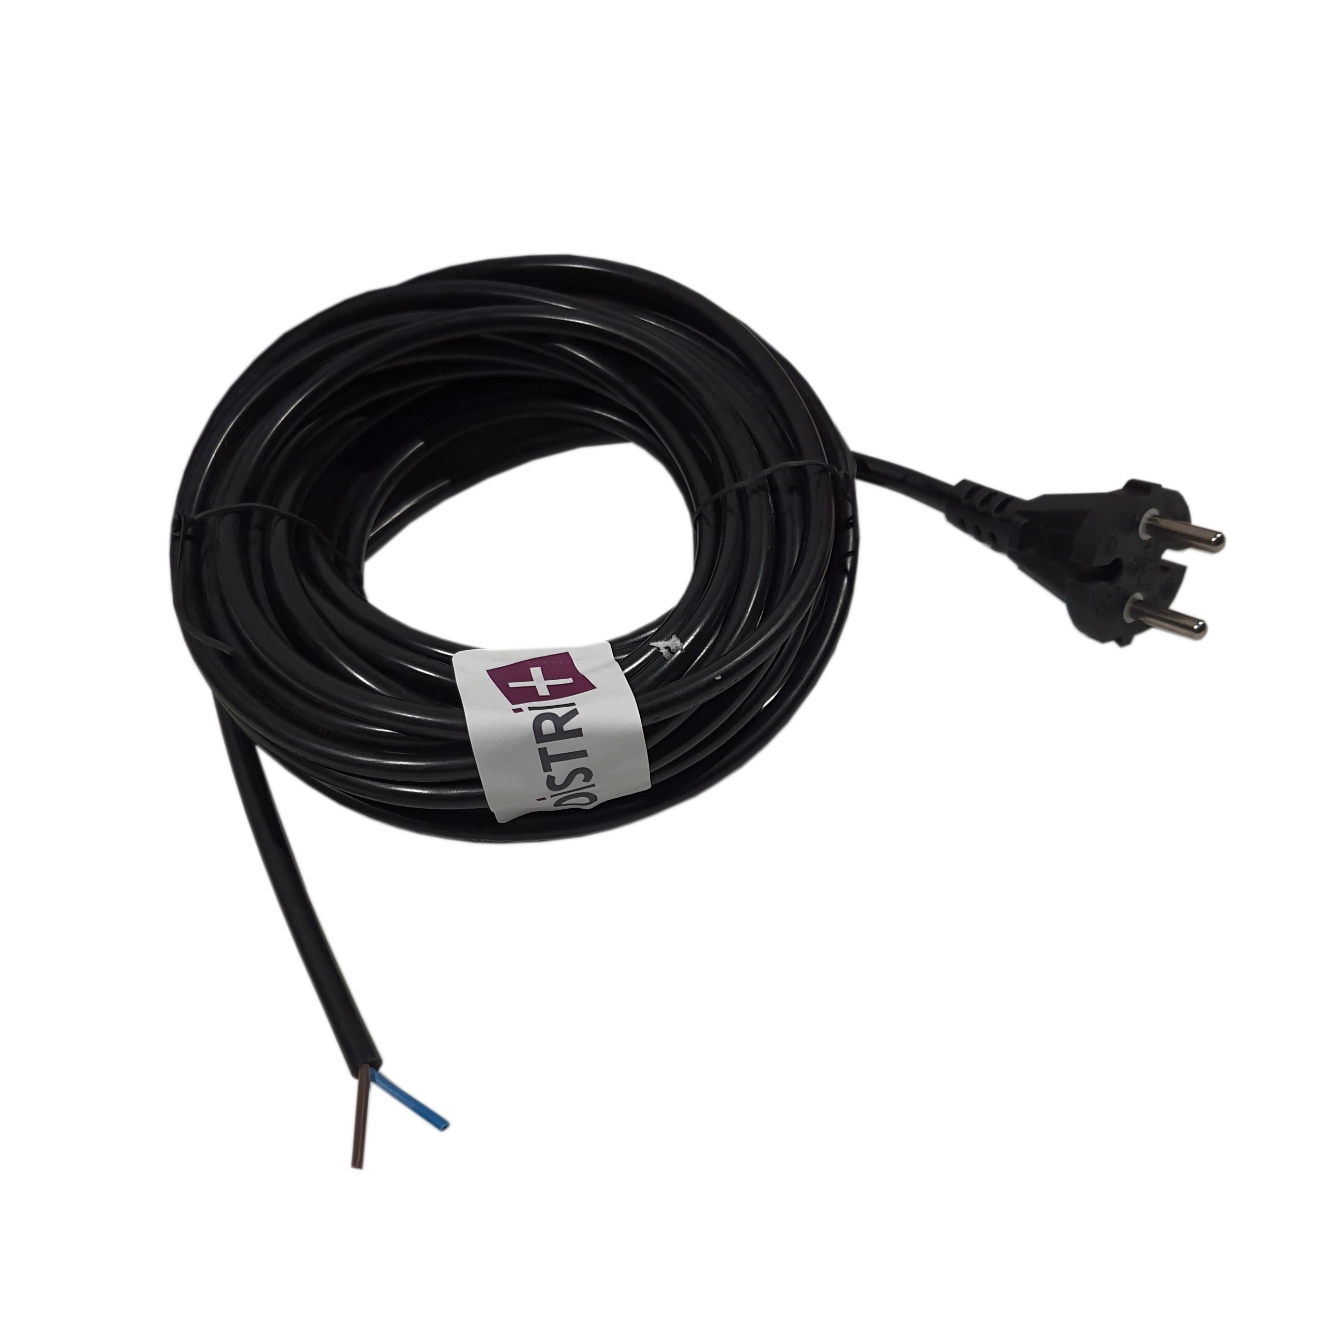 Câble d'alimentaion noir pour aspirateur avec embout dénudé H05VVF - 2x0,75mm² - Longueur : 9m
